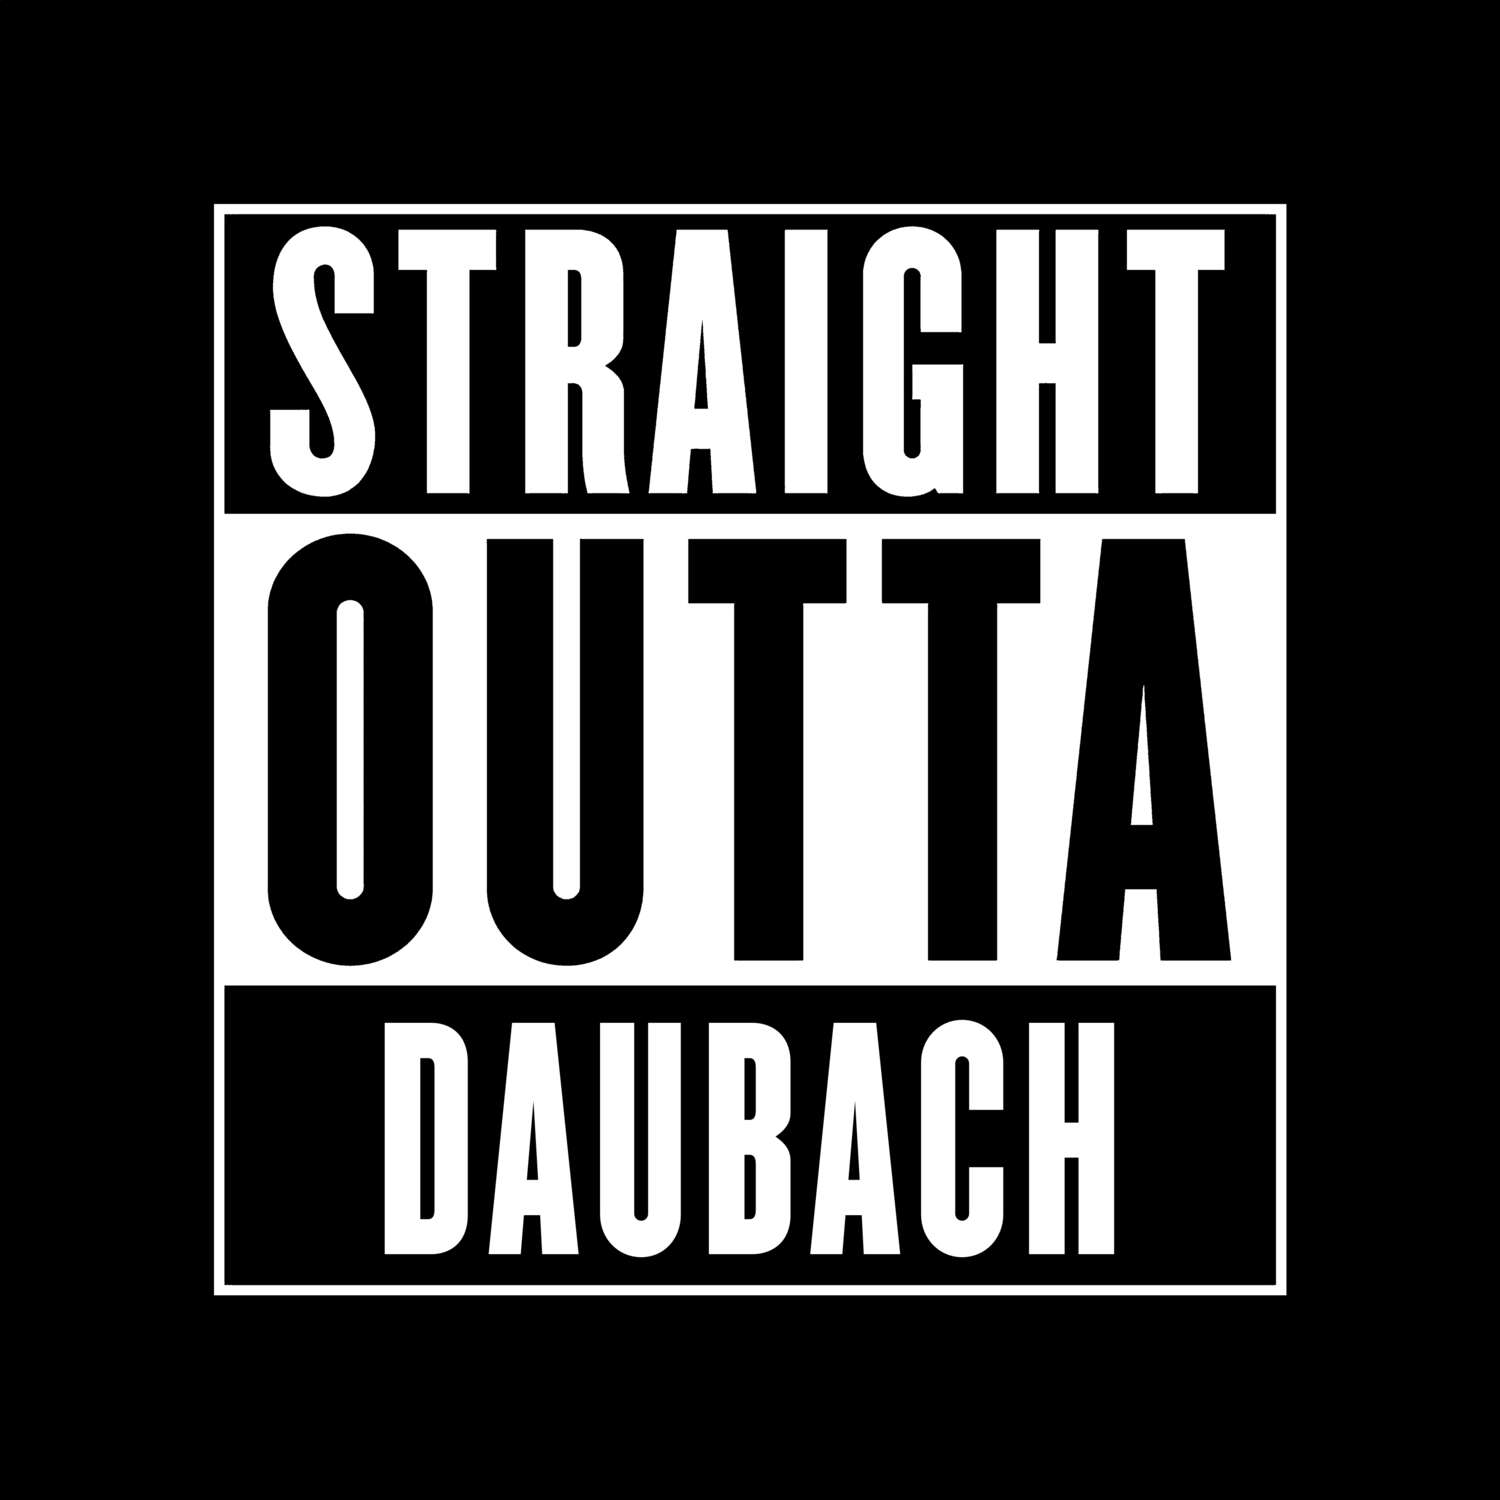 Daubach T-Shirt »Straight Outta«